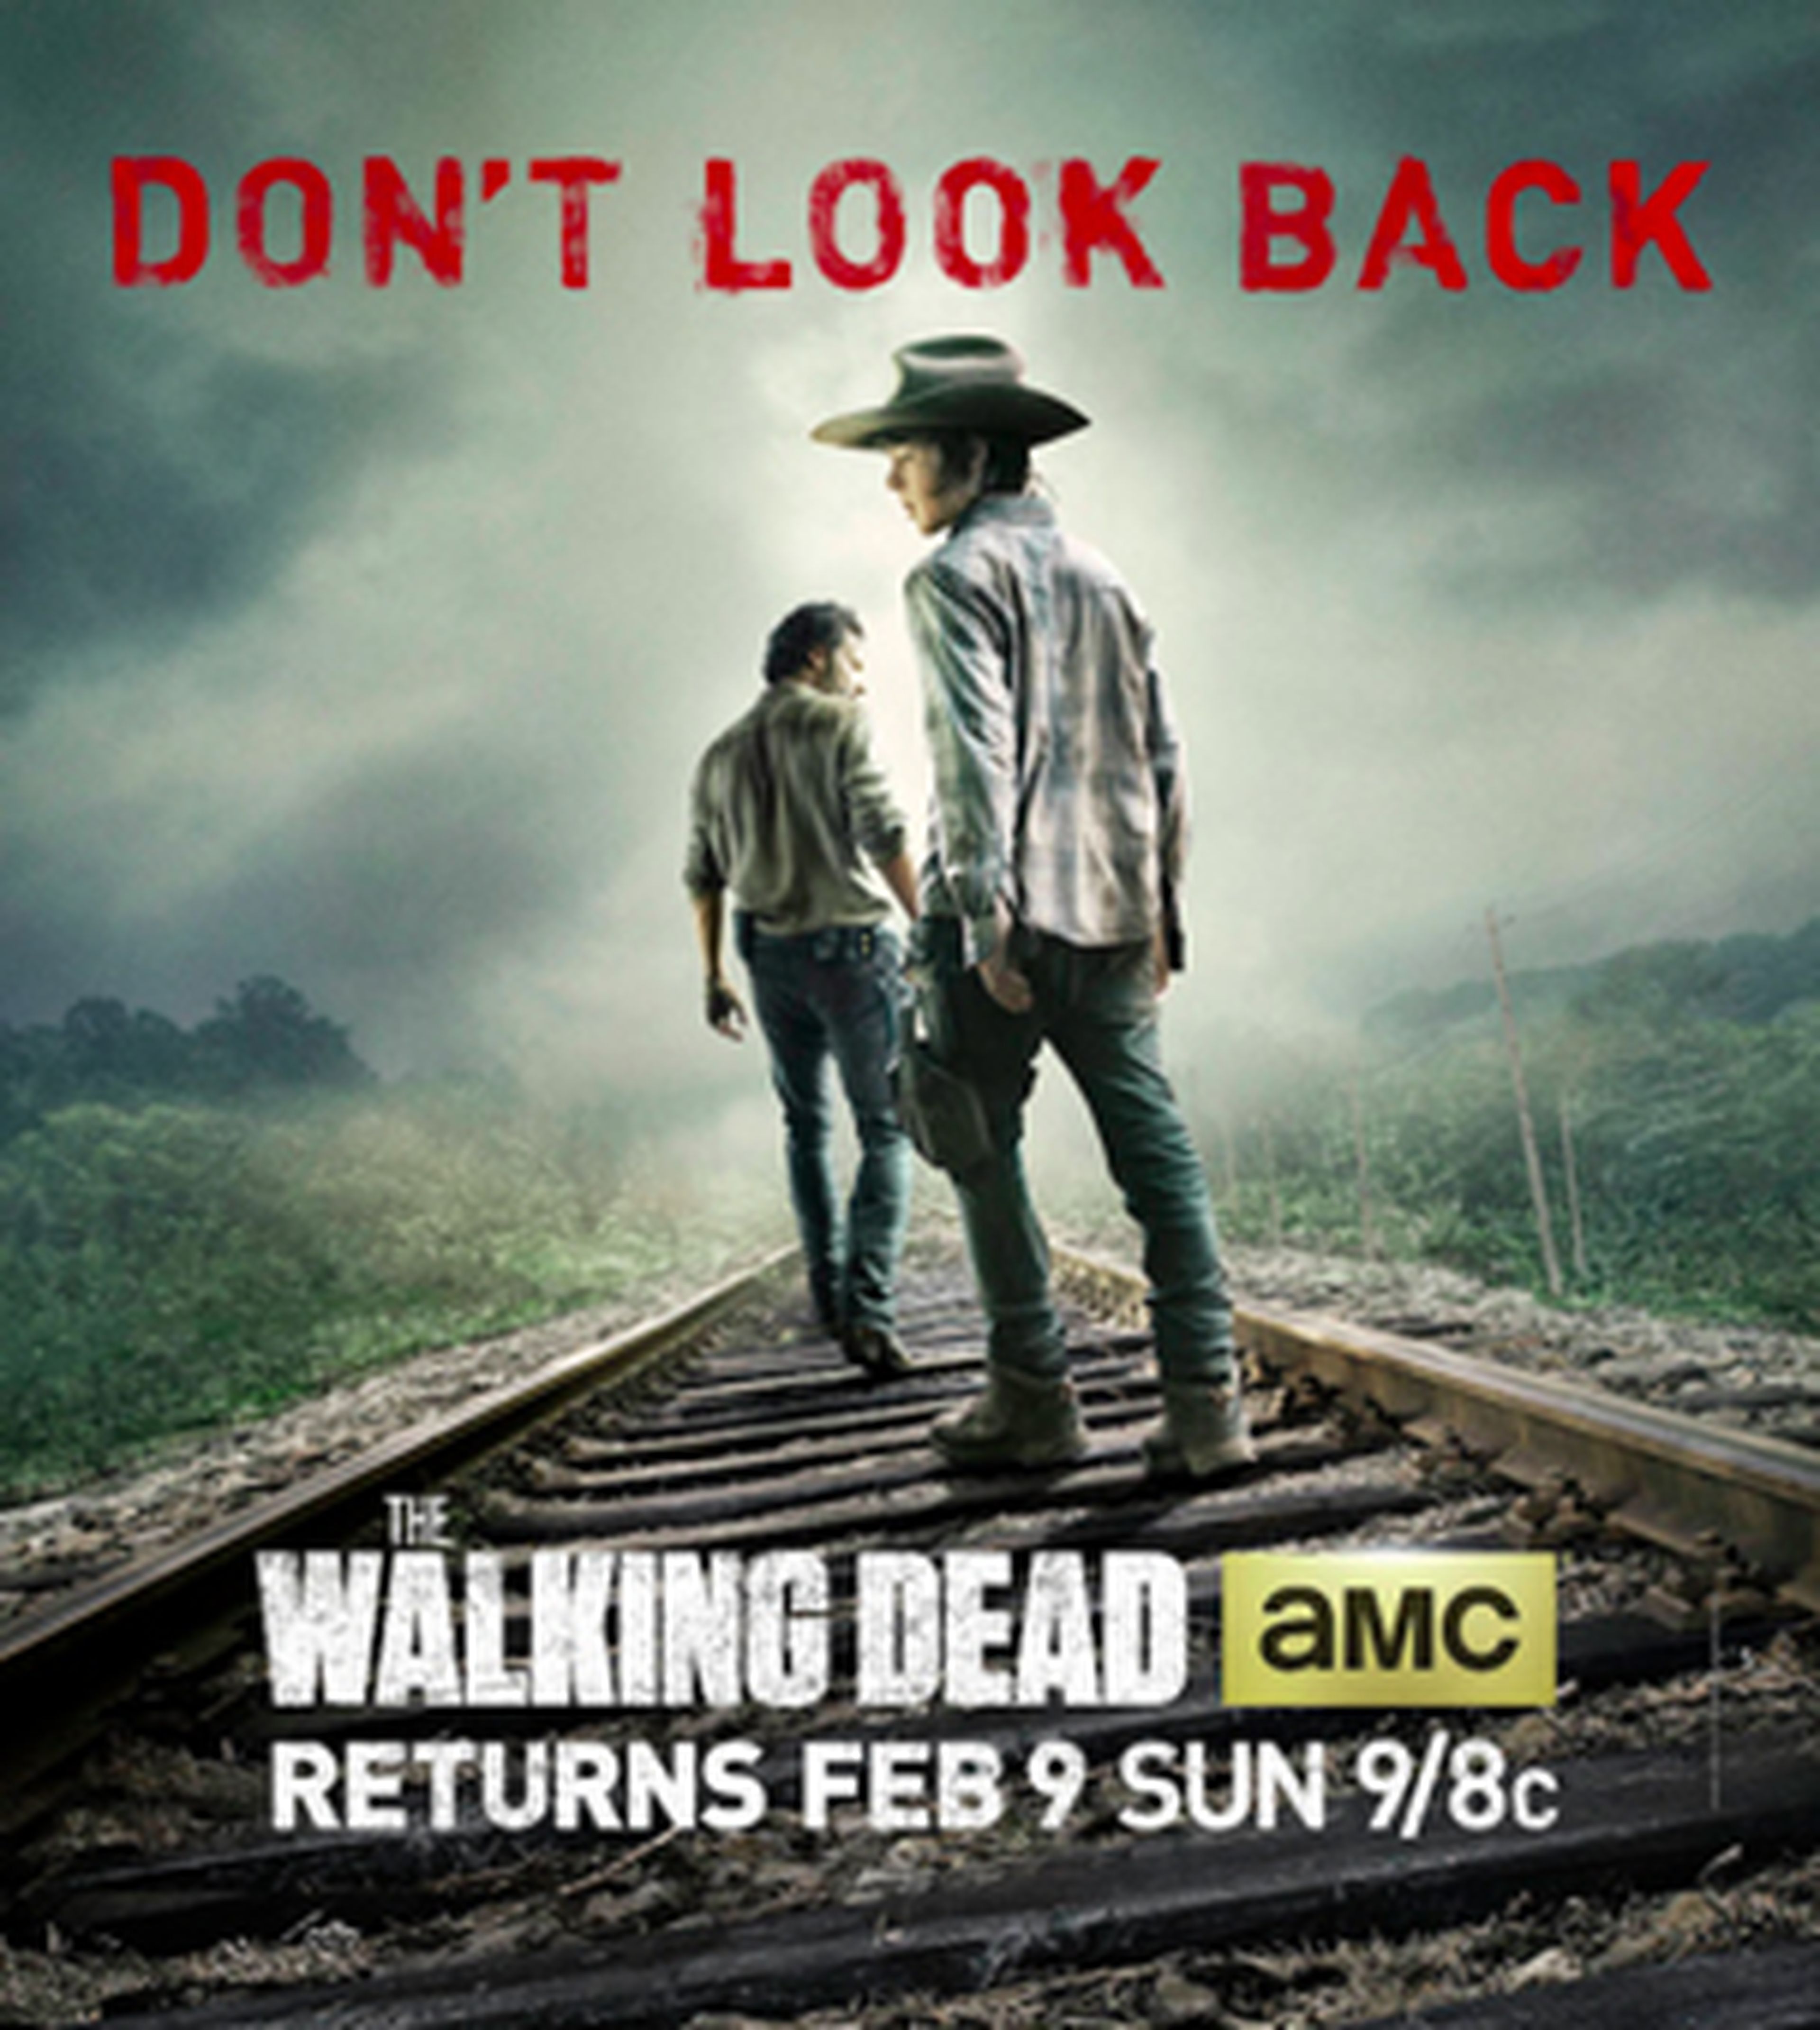 Promos y cartel del retorno de The Walking Dead